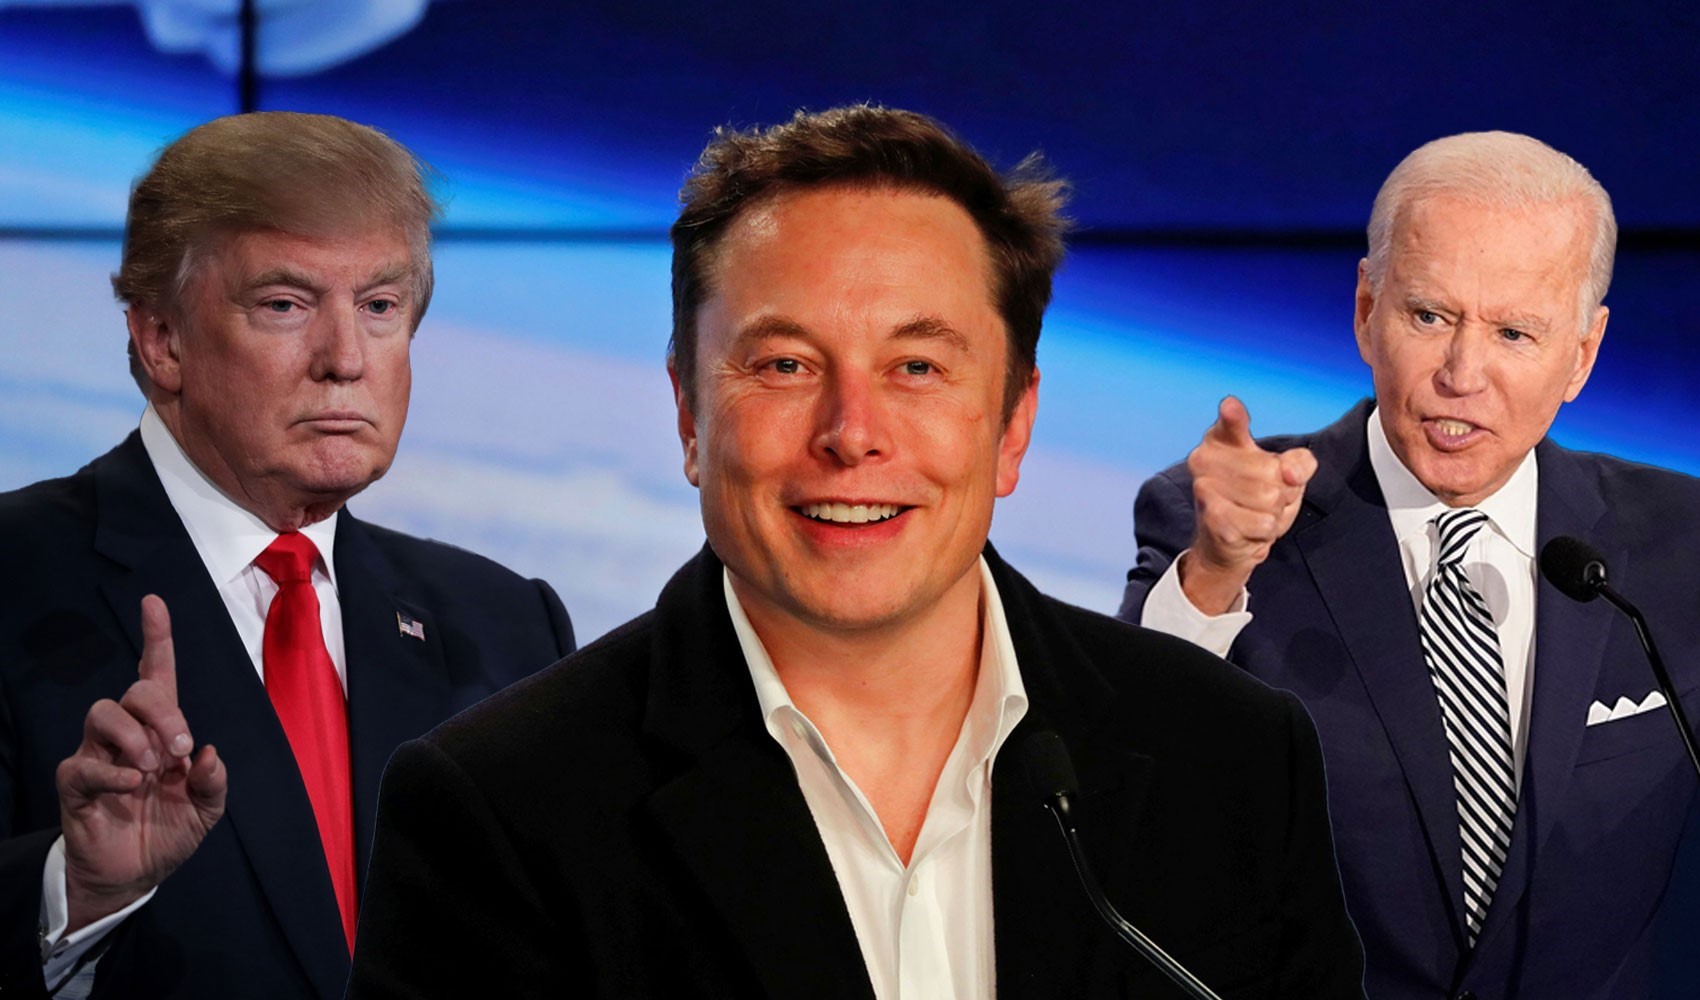 Biden’a demediğini bırakmayan Elon Musk’tan Trump’ın kampanyasına dev bağış